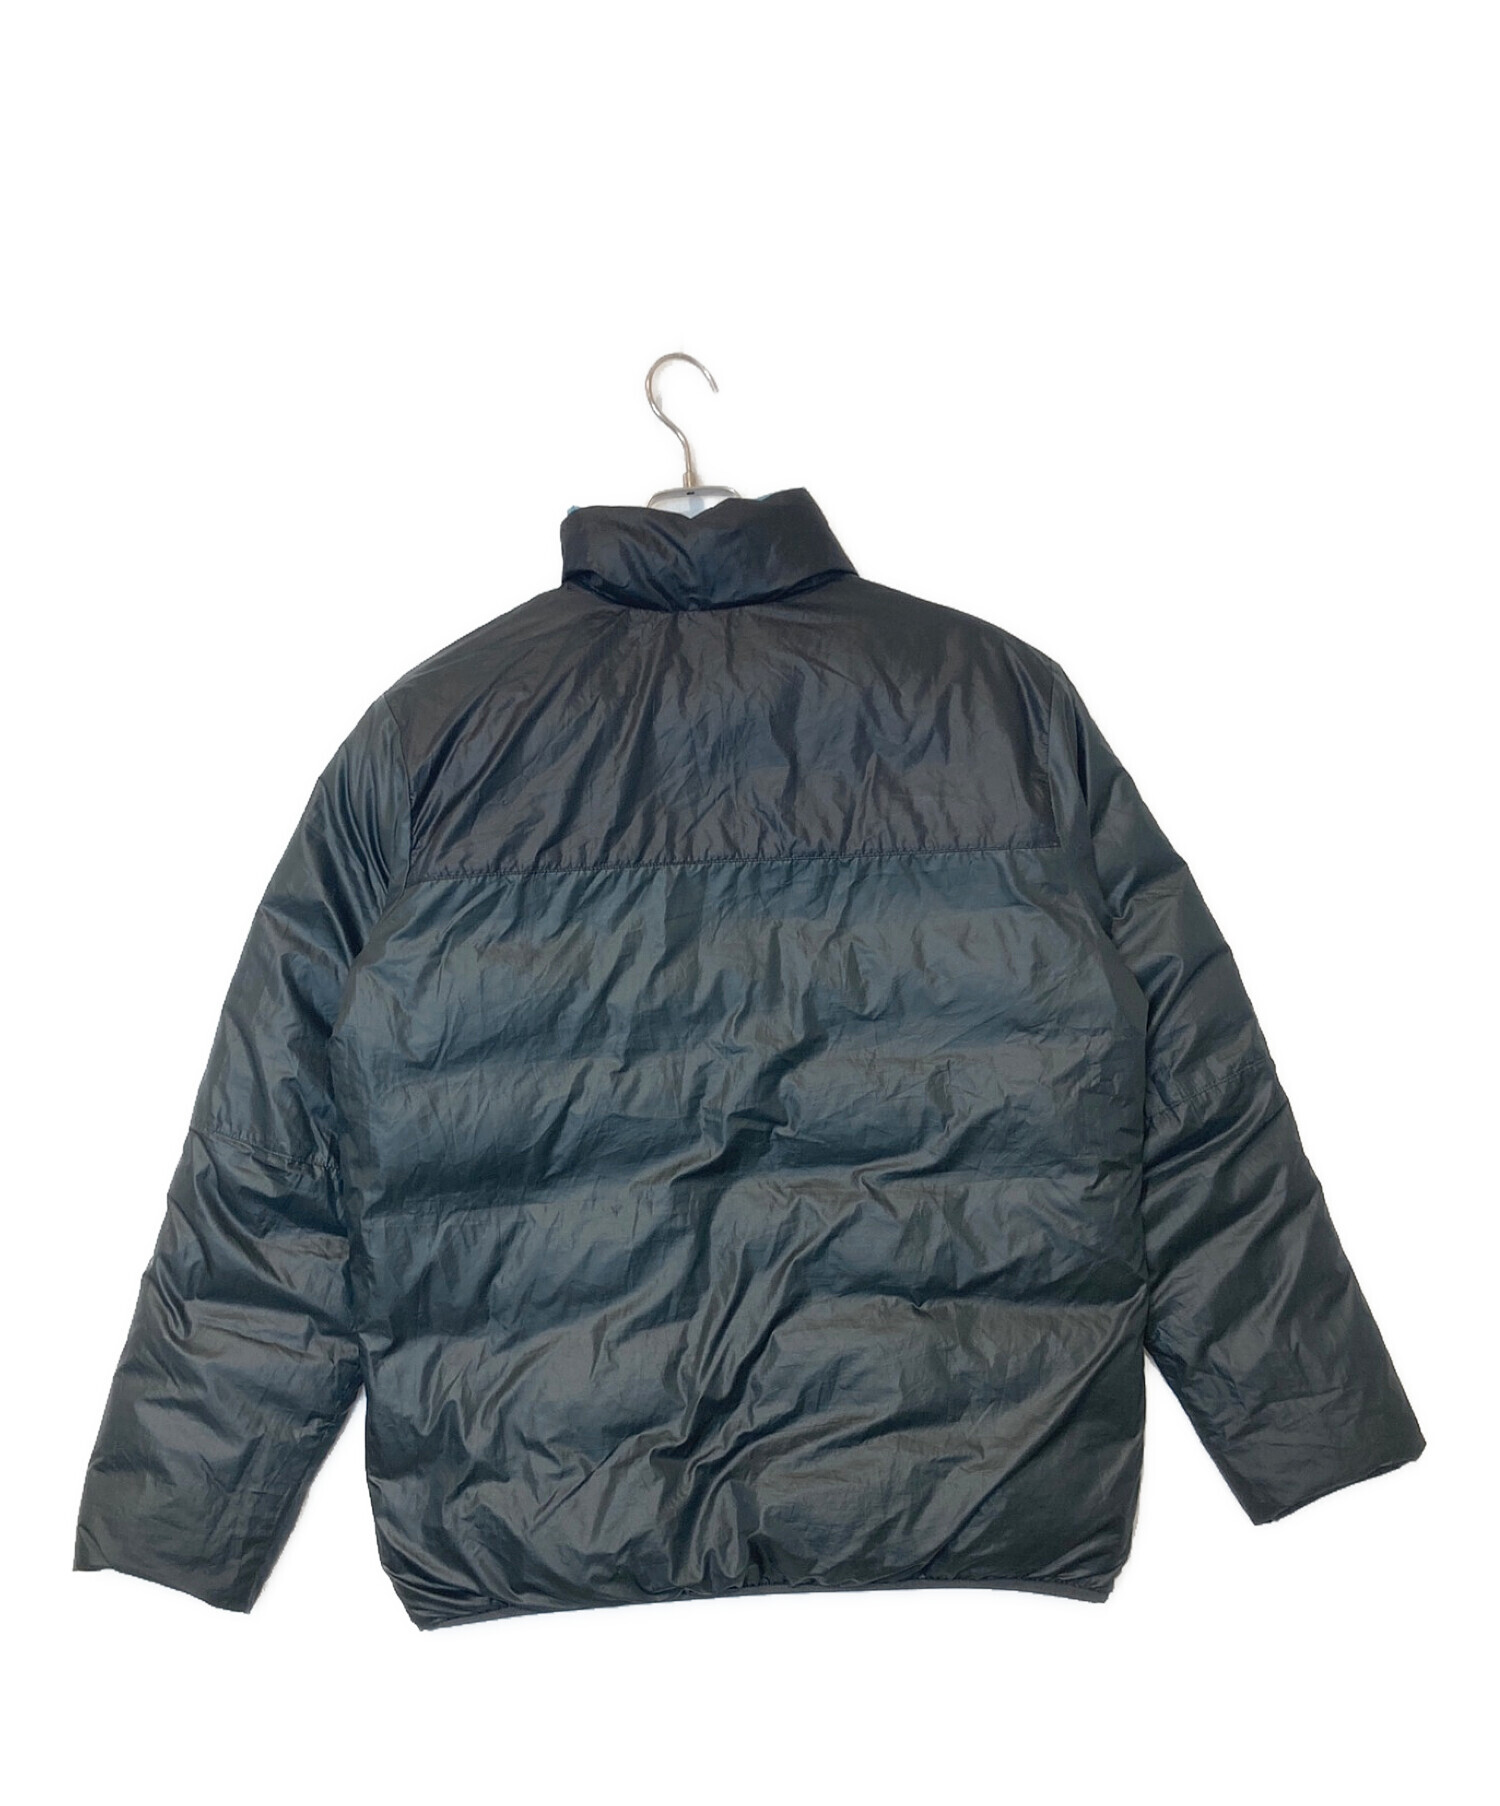 NIKE (ナイキ) リバーシブルダウンジャケット ブルー×ブラック サイズ:L